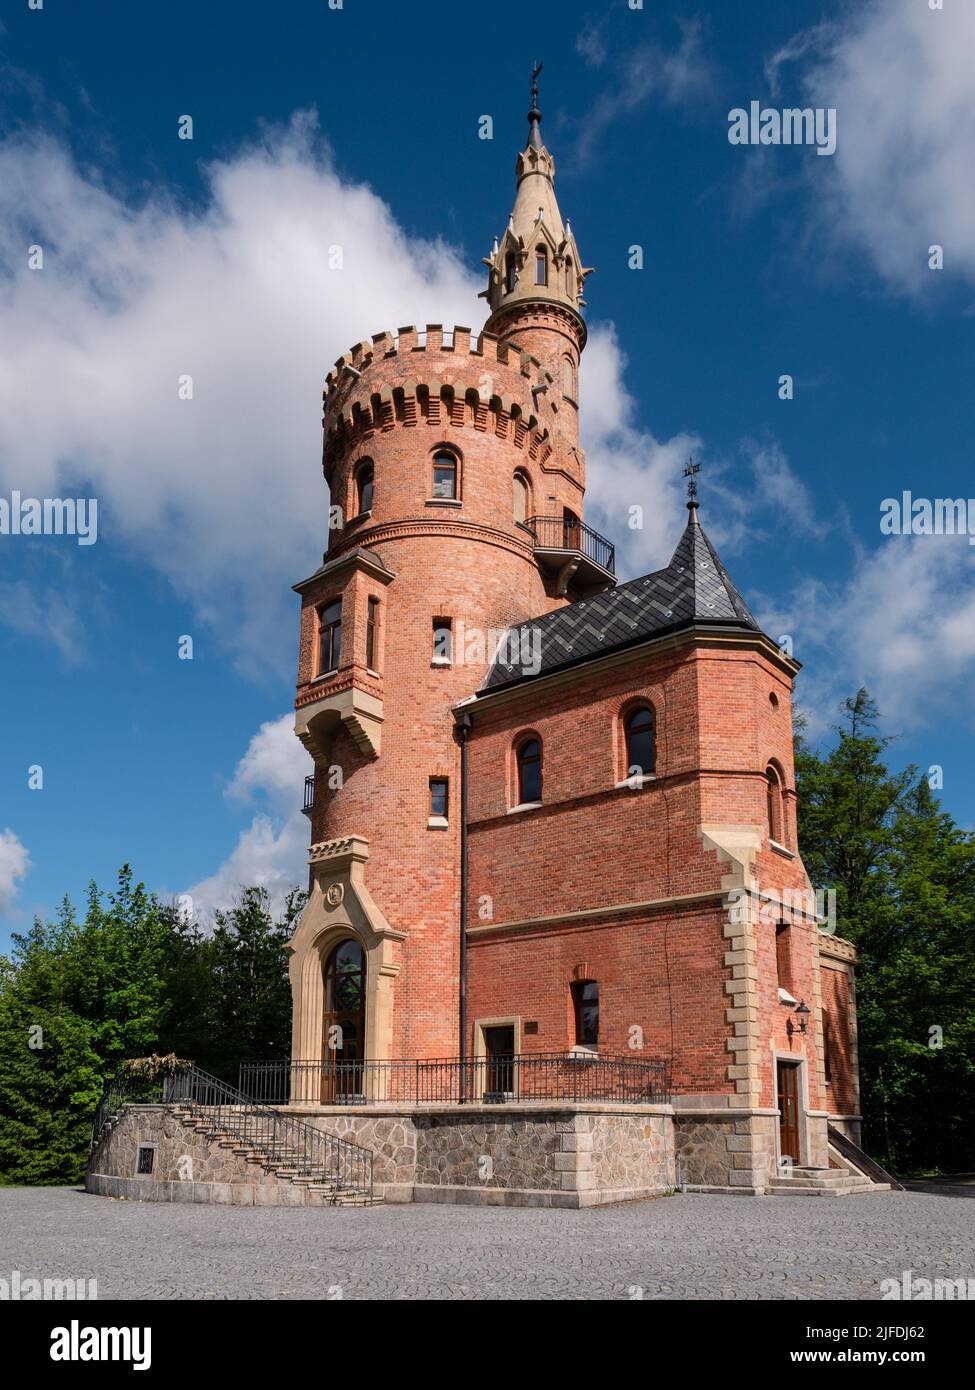 Goethe's Lookout Tower o Goethova vyhlídka en Karlovy Vary, Bohemia, República Checa Foto de stock